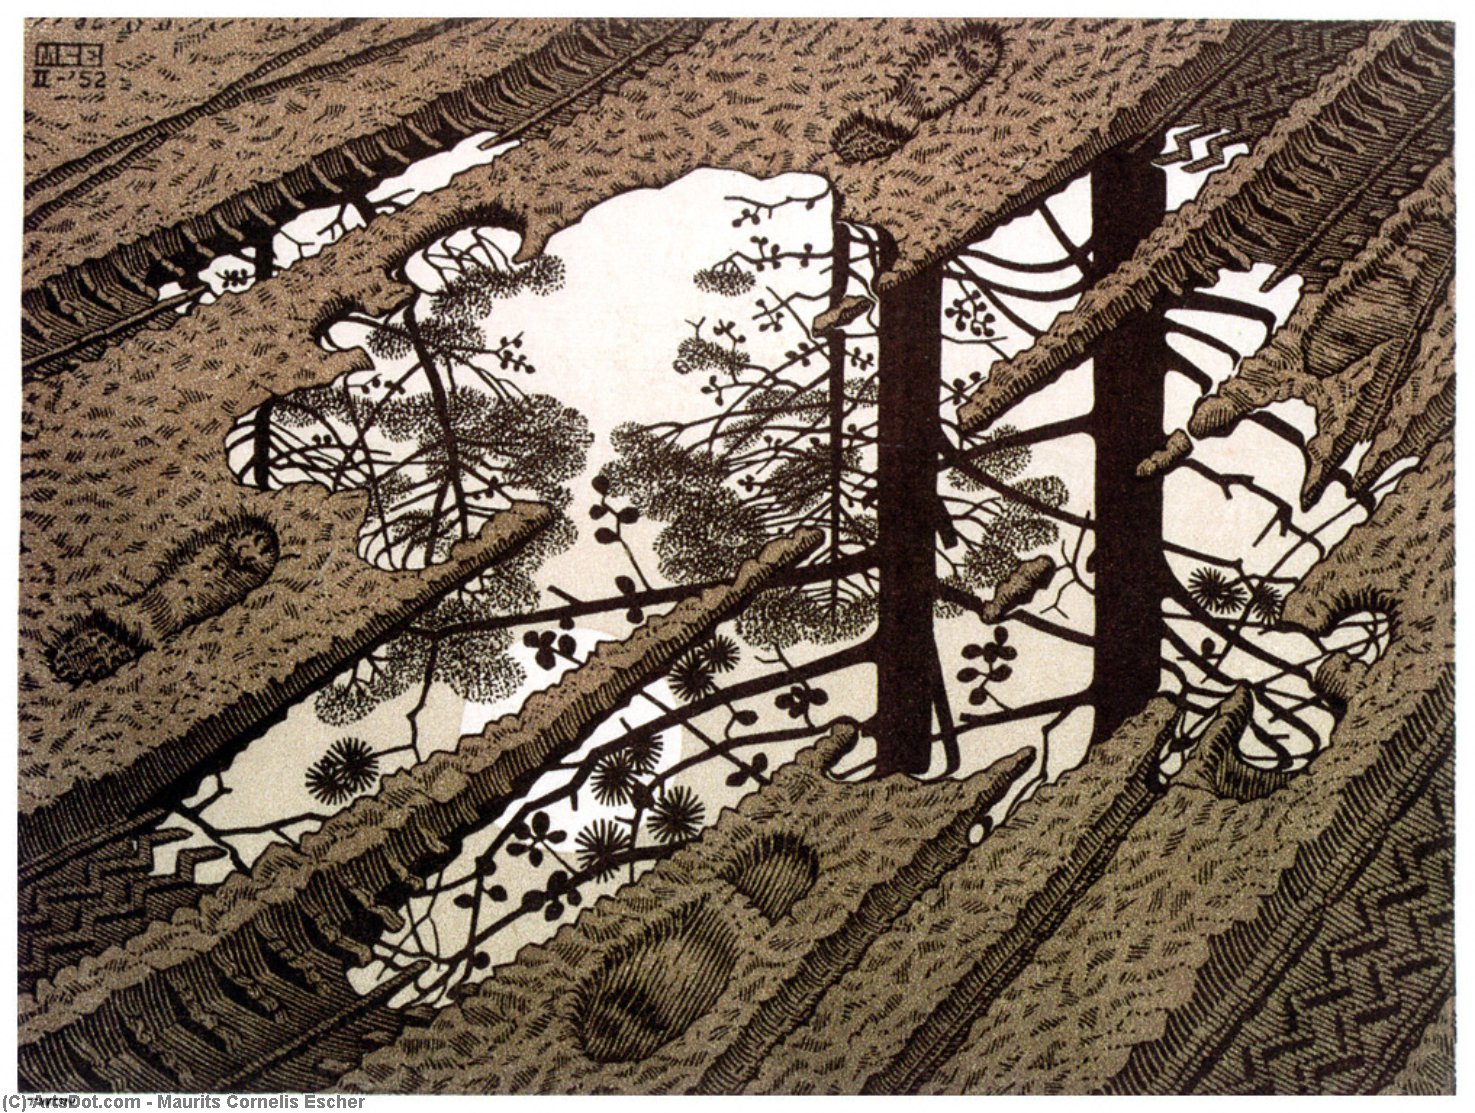 WikiOO.org - Enciklopedija likovnih umjetnosti - Slikarstvo, umjetnička djela Maurits Cornelis Escher - PUDDLE